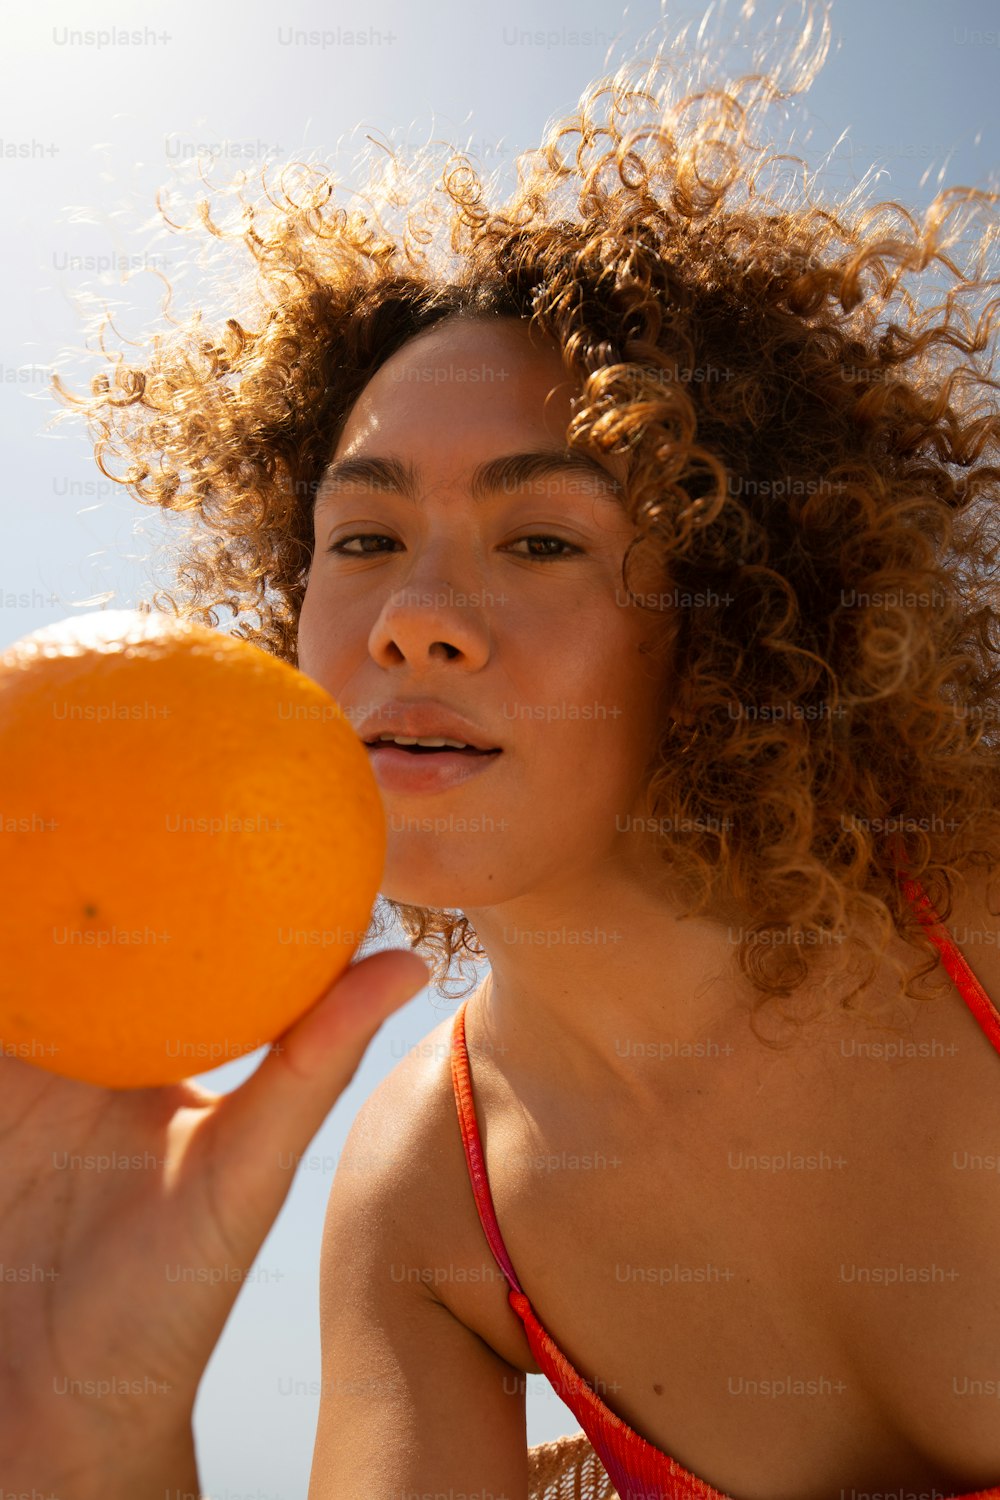 a woman in a bikini holding an orange